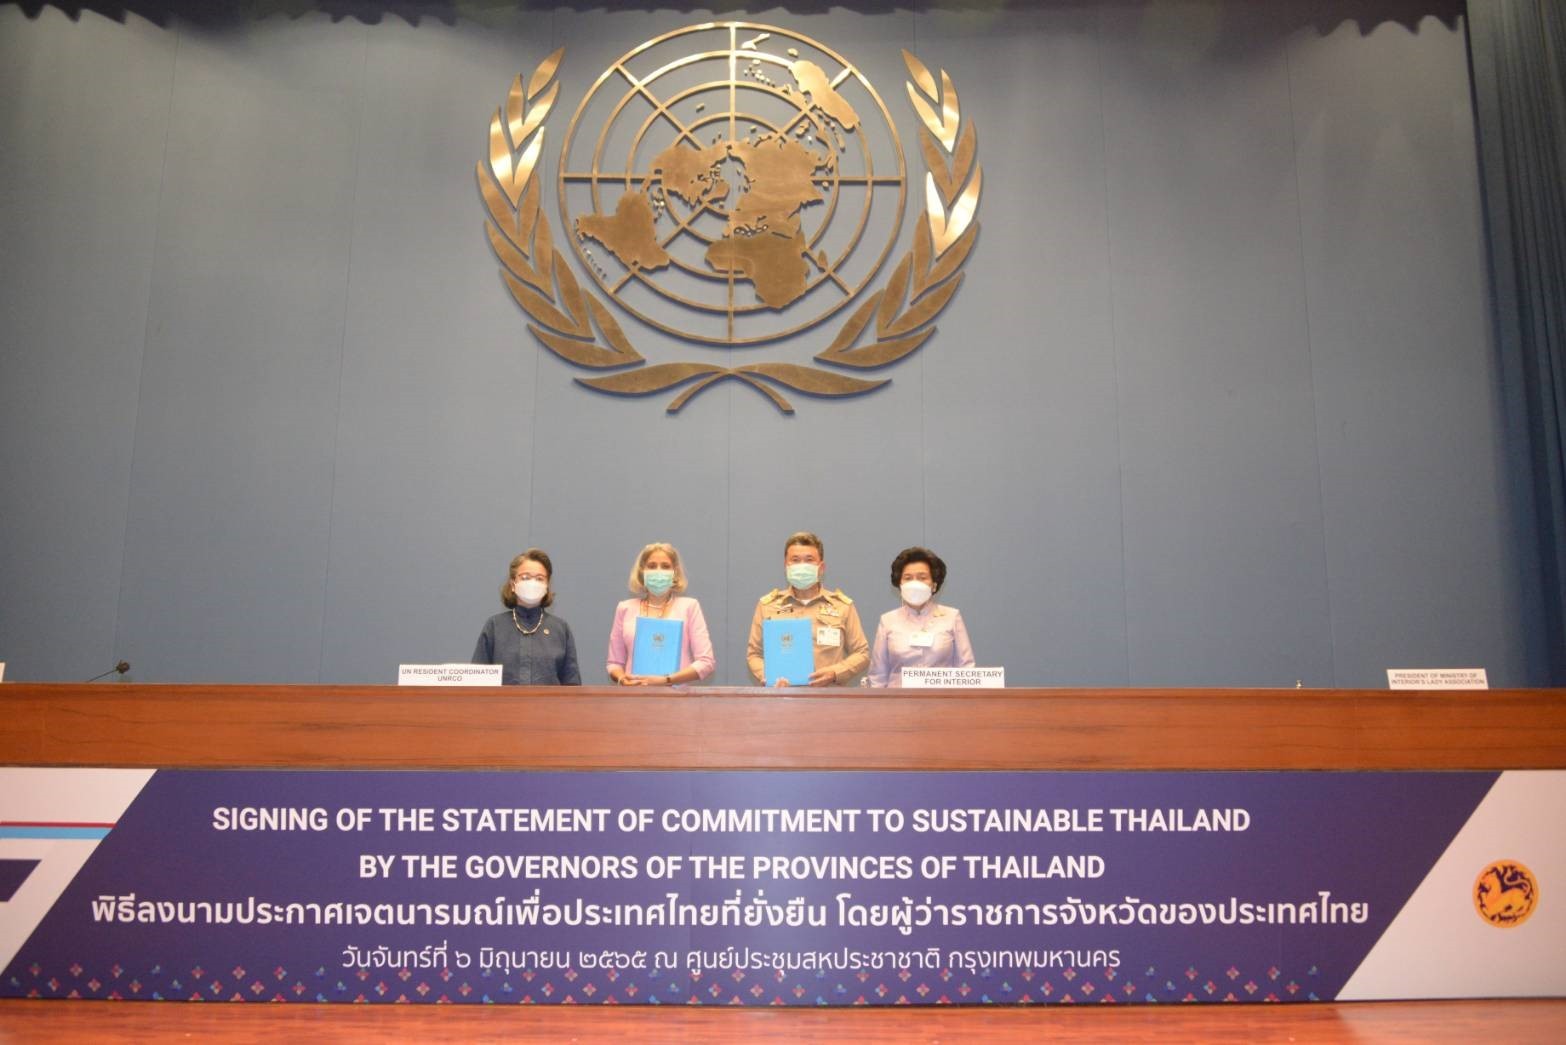 “UN ชื่นชมผลงานกระทรวงมหาดไทยในการขับเคลื่อนเป้าหมายการพัฒนาที่ยั่งยืน (SDGs) พร้อมเตรียมนำเสนอผลสำเร็จของกระทรวงมหาดไทยที่สามารถซื้อขายคาร์บอนเครดิตเป็นชาติแรกของโลก” ในเวที SDGs Summit 2023 ณ สำนักงานใหญ่องค์การสหประชาชาติ ณ นครนิวยอร์ก สหรัฐอเมริกา